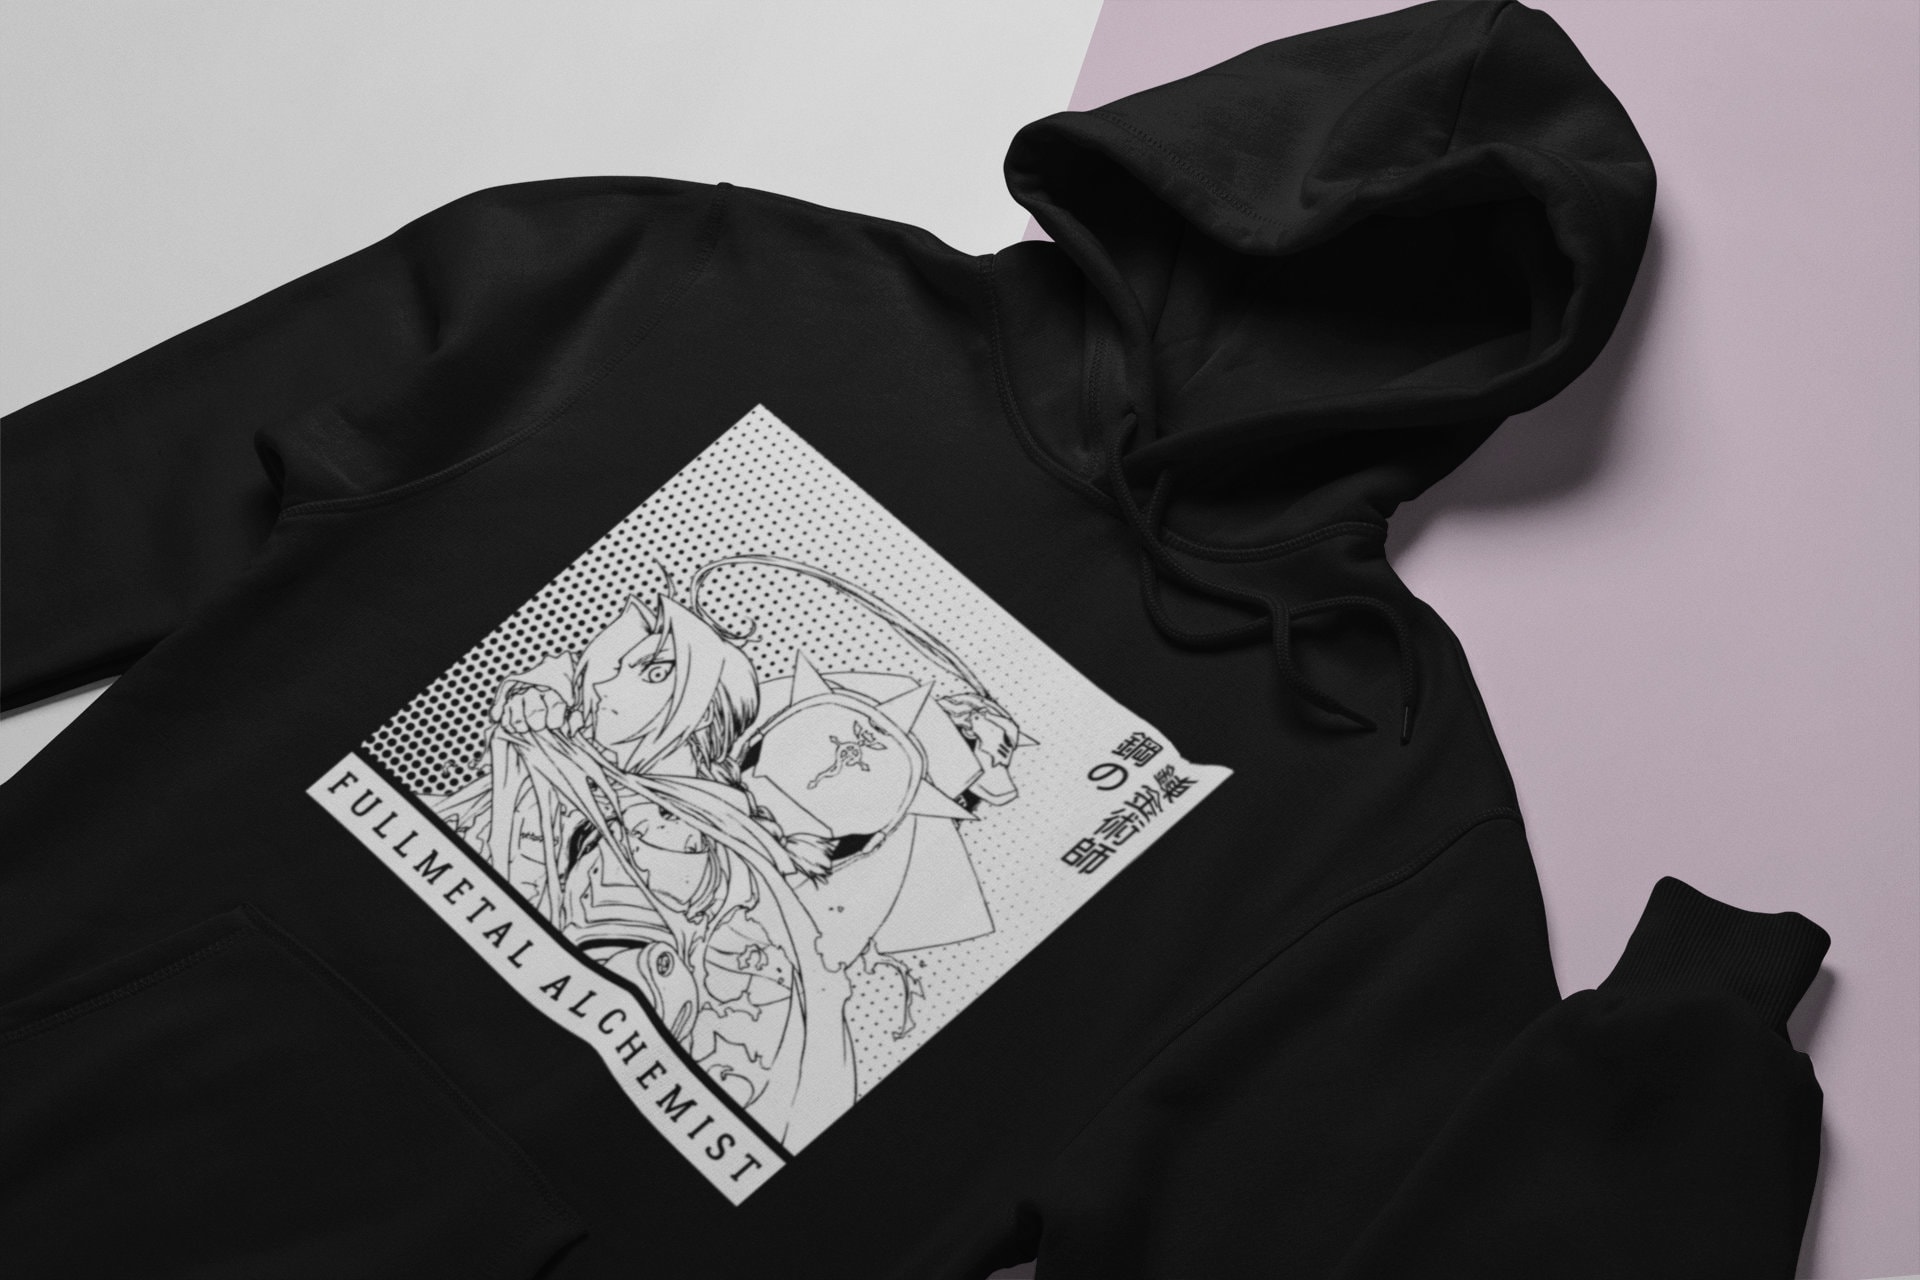 Noth Anime Fullmetal Alchemist 3D printed hoodie sweatshirt cosplay costume 